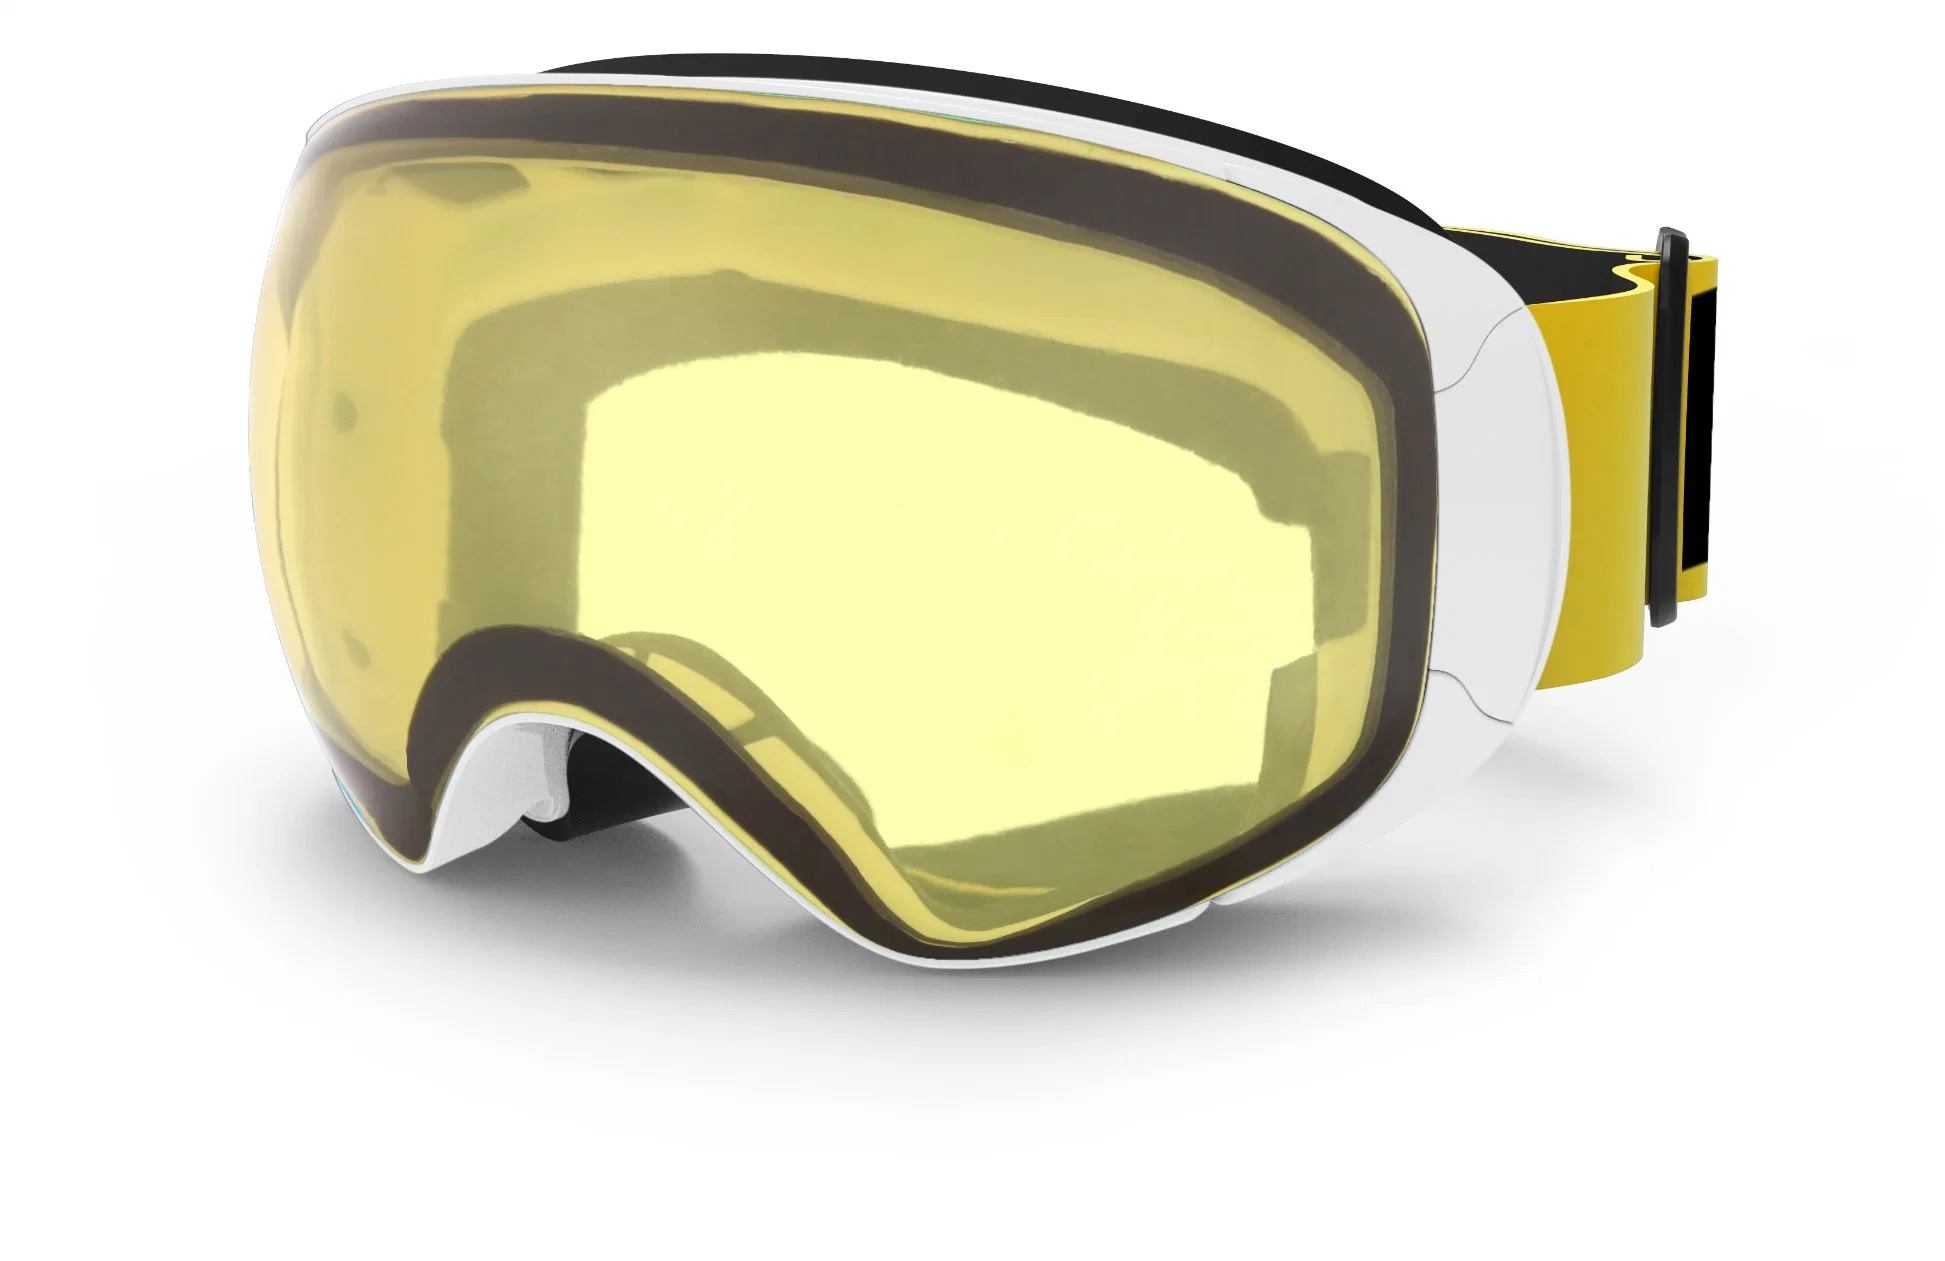 Diseño de Moda 2019 Amazon mejor venta de gafas de esquí libre de niebla sin cerco FDA aprobó sin niebla Snowboard Gafas de seguridad refleja la máscara de esquí